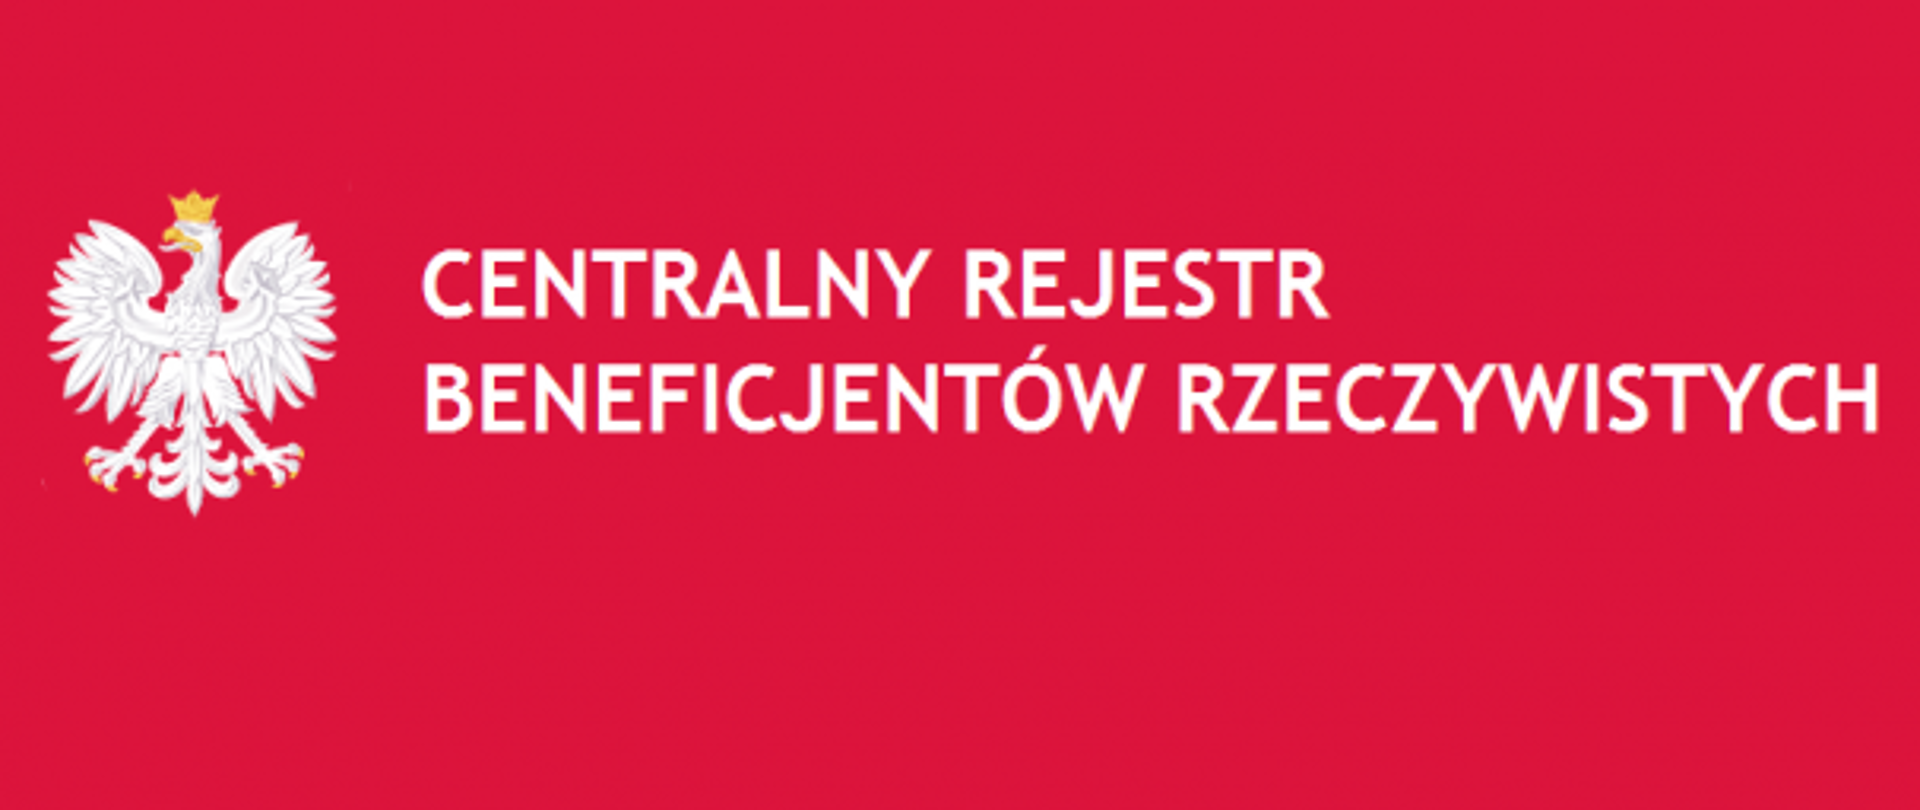 Na czerwonym tle znajduje się orzeł biały oraz biały napis" Centralny Rejestr Beneficjentów Rzeczywistych"